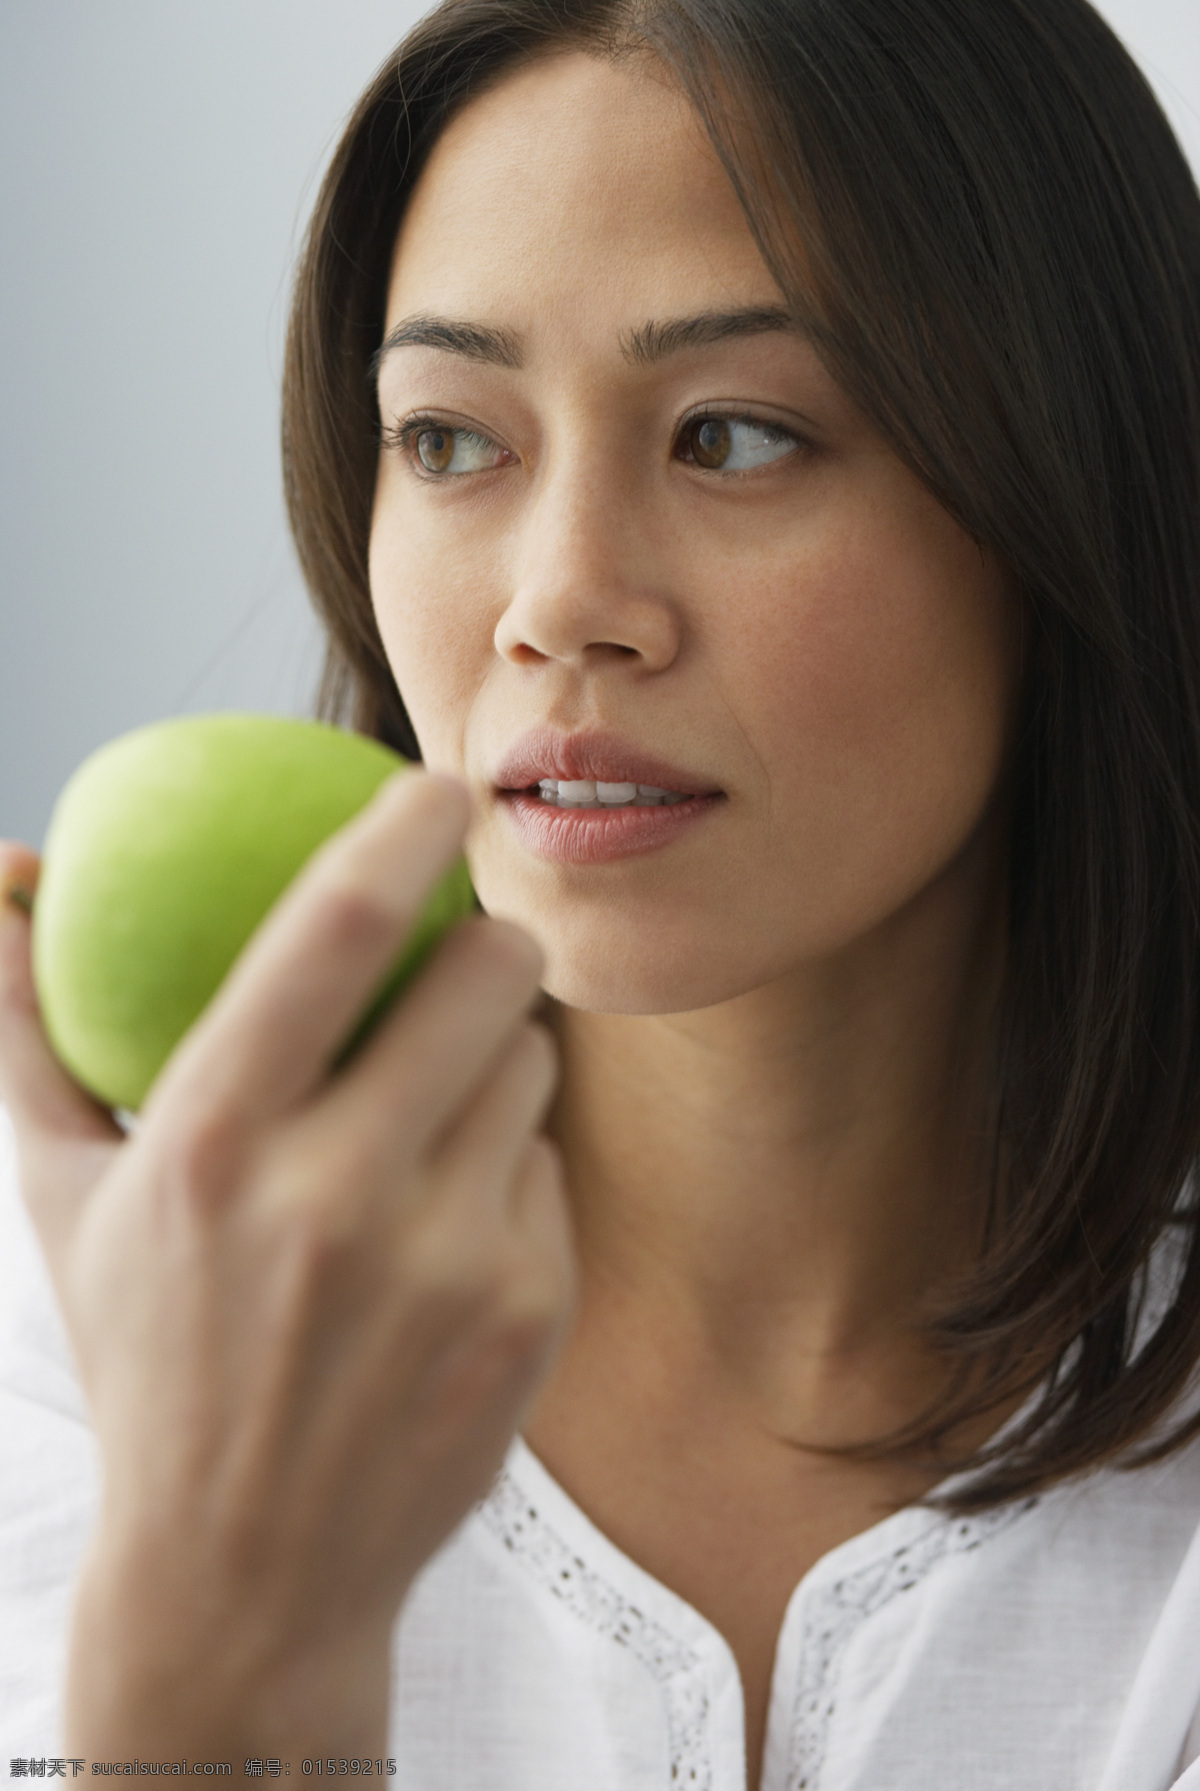 苹果 女人 吃苹果 吃水果 养生 美容 国外女人 女性 人物素材 美女图片 人物图片